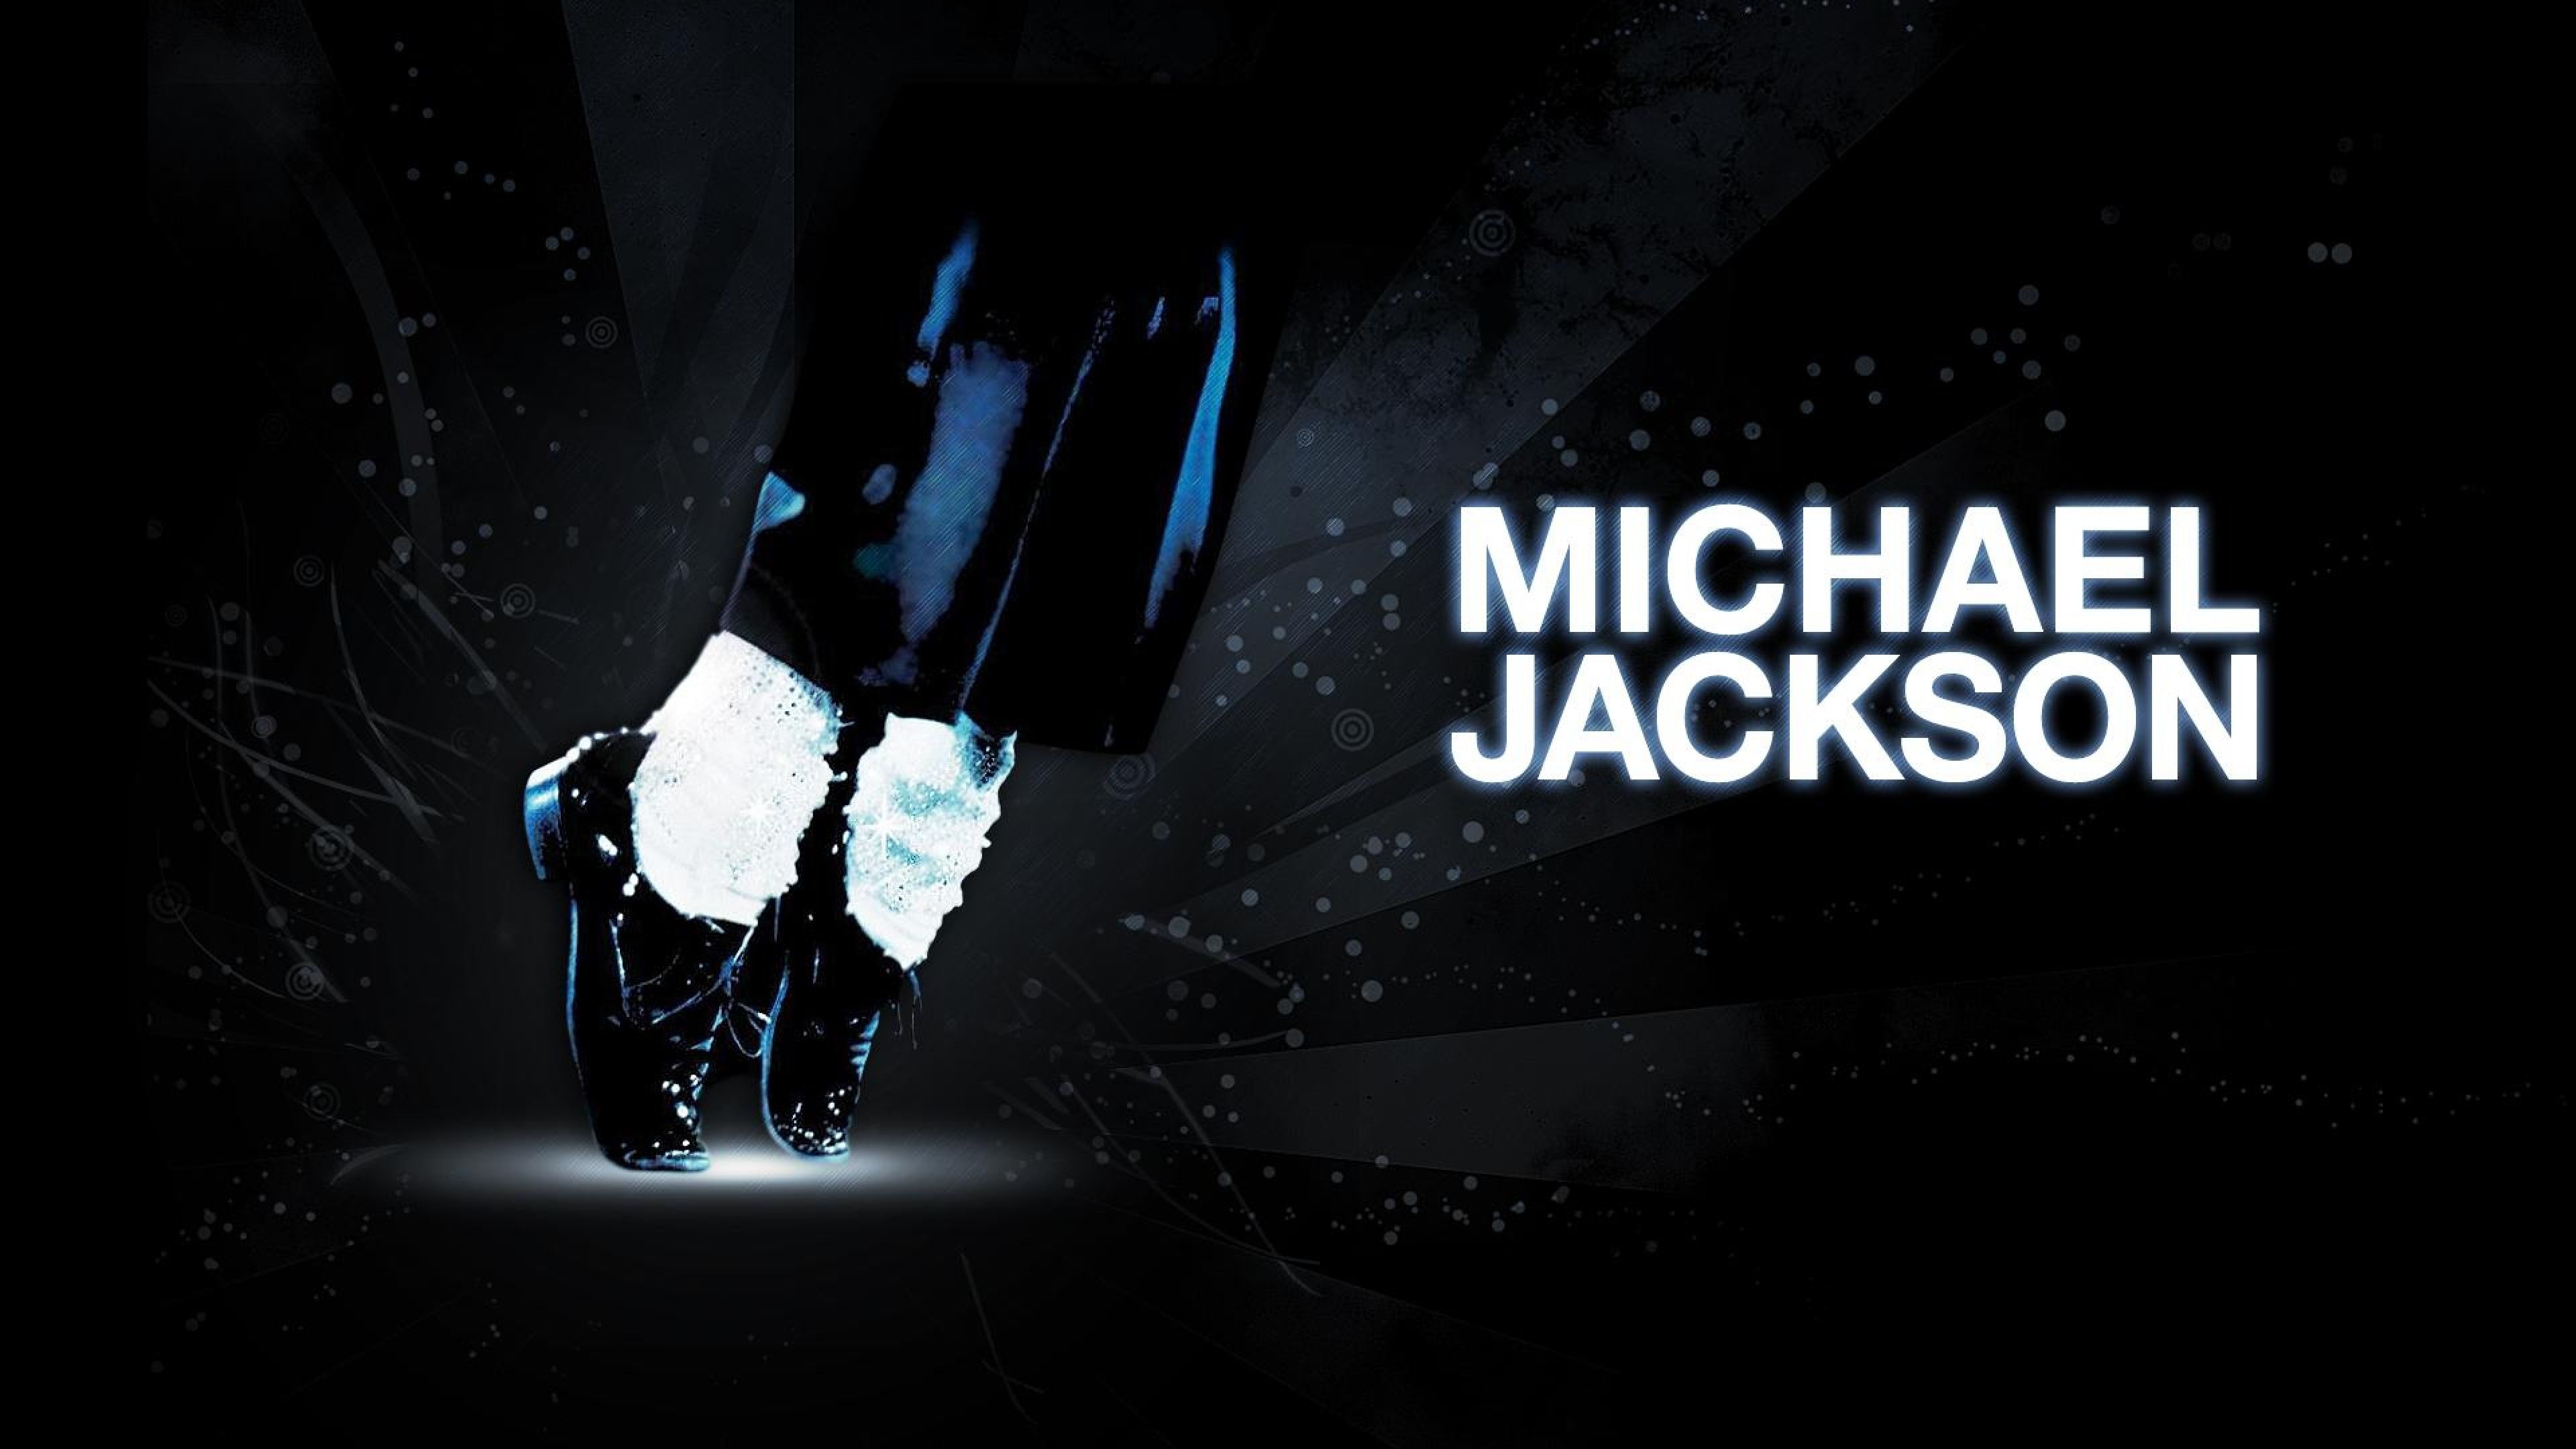 Michael Jackson Fondos de alta resolución y calidad Descargar